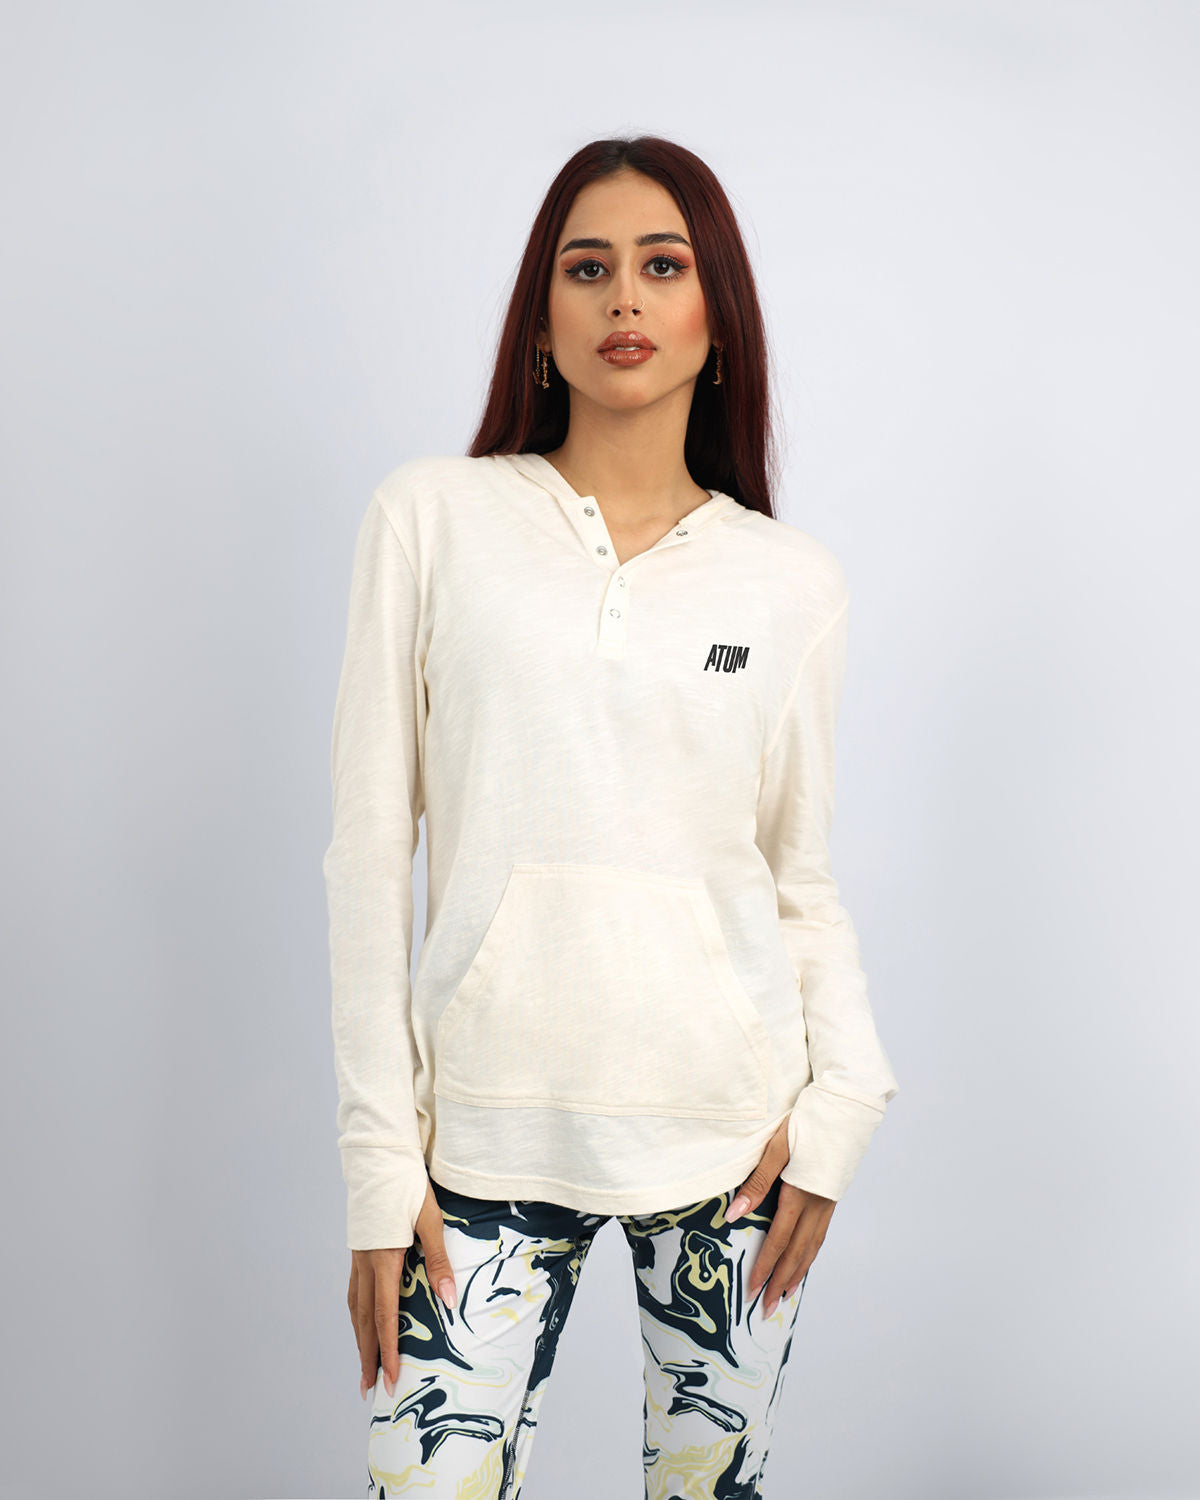 Atum Women's Basic Hooded T-shirt - Atum Egypt #